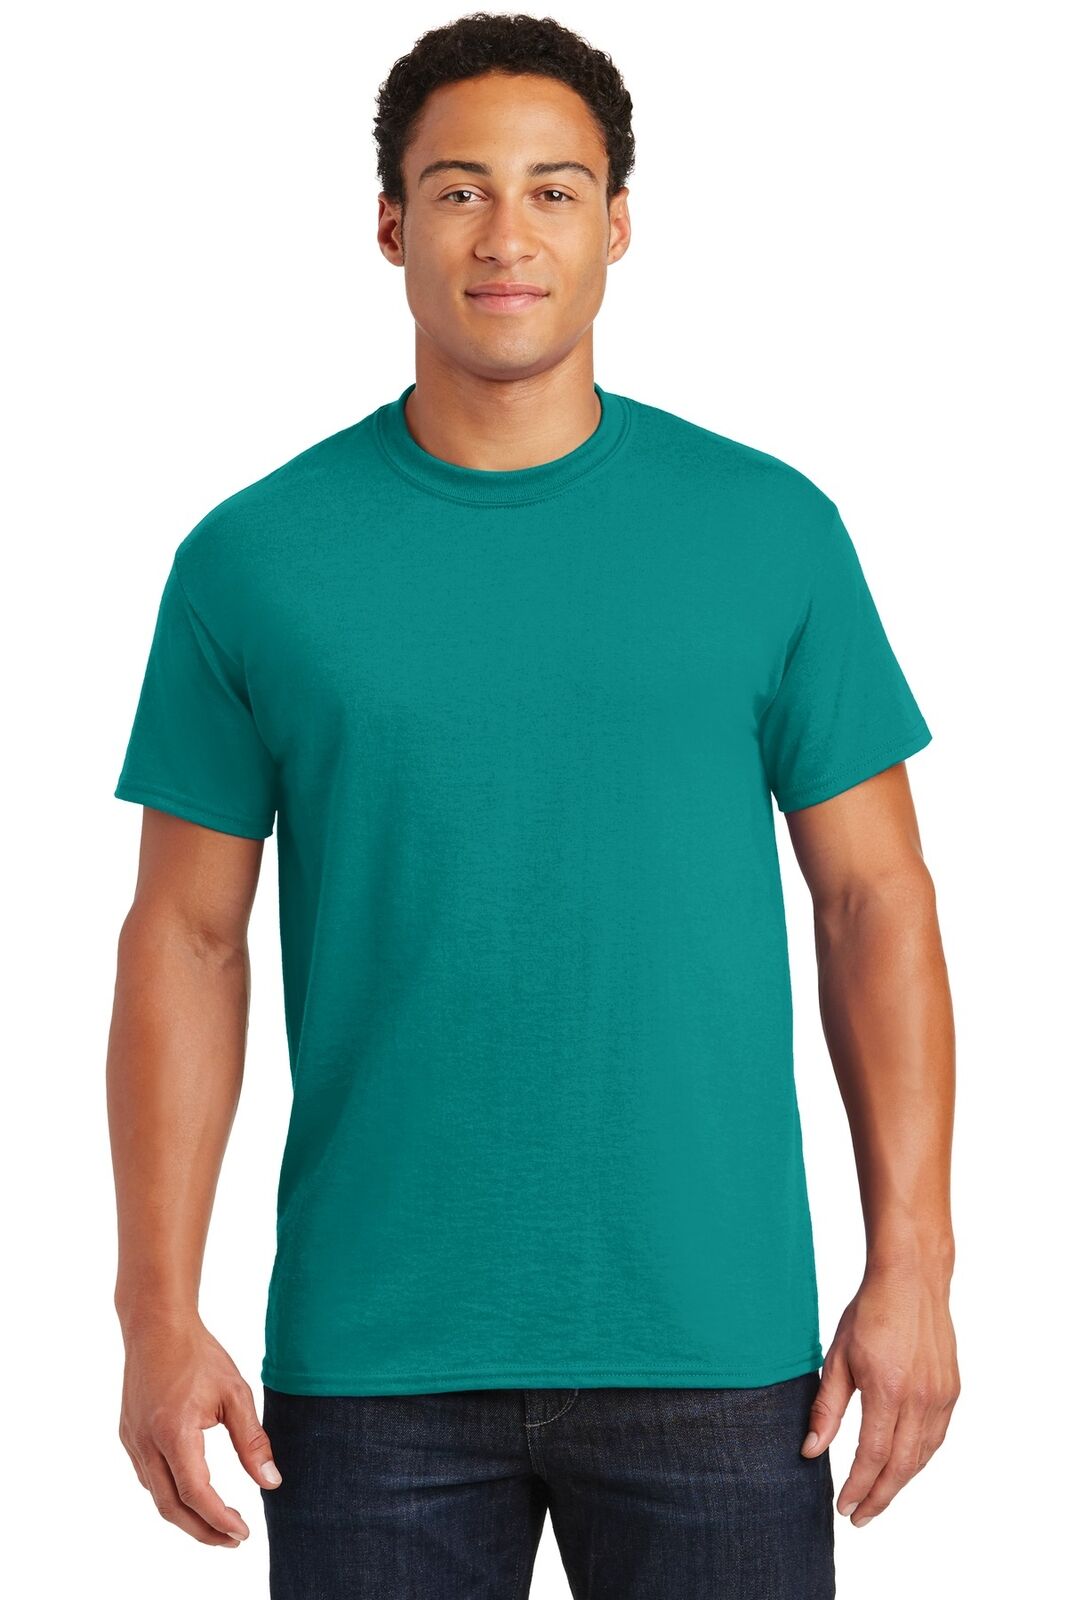 Gildan G800 Mens Short Sleeve Moisture Wicking DryBlend Crew Neck T-Shirt